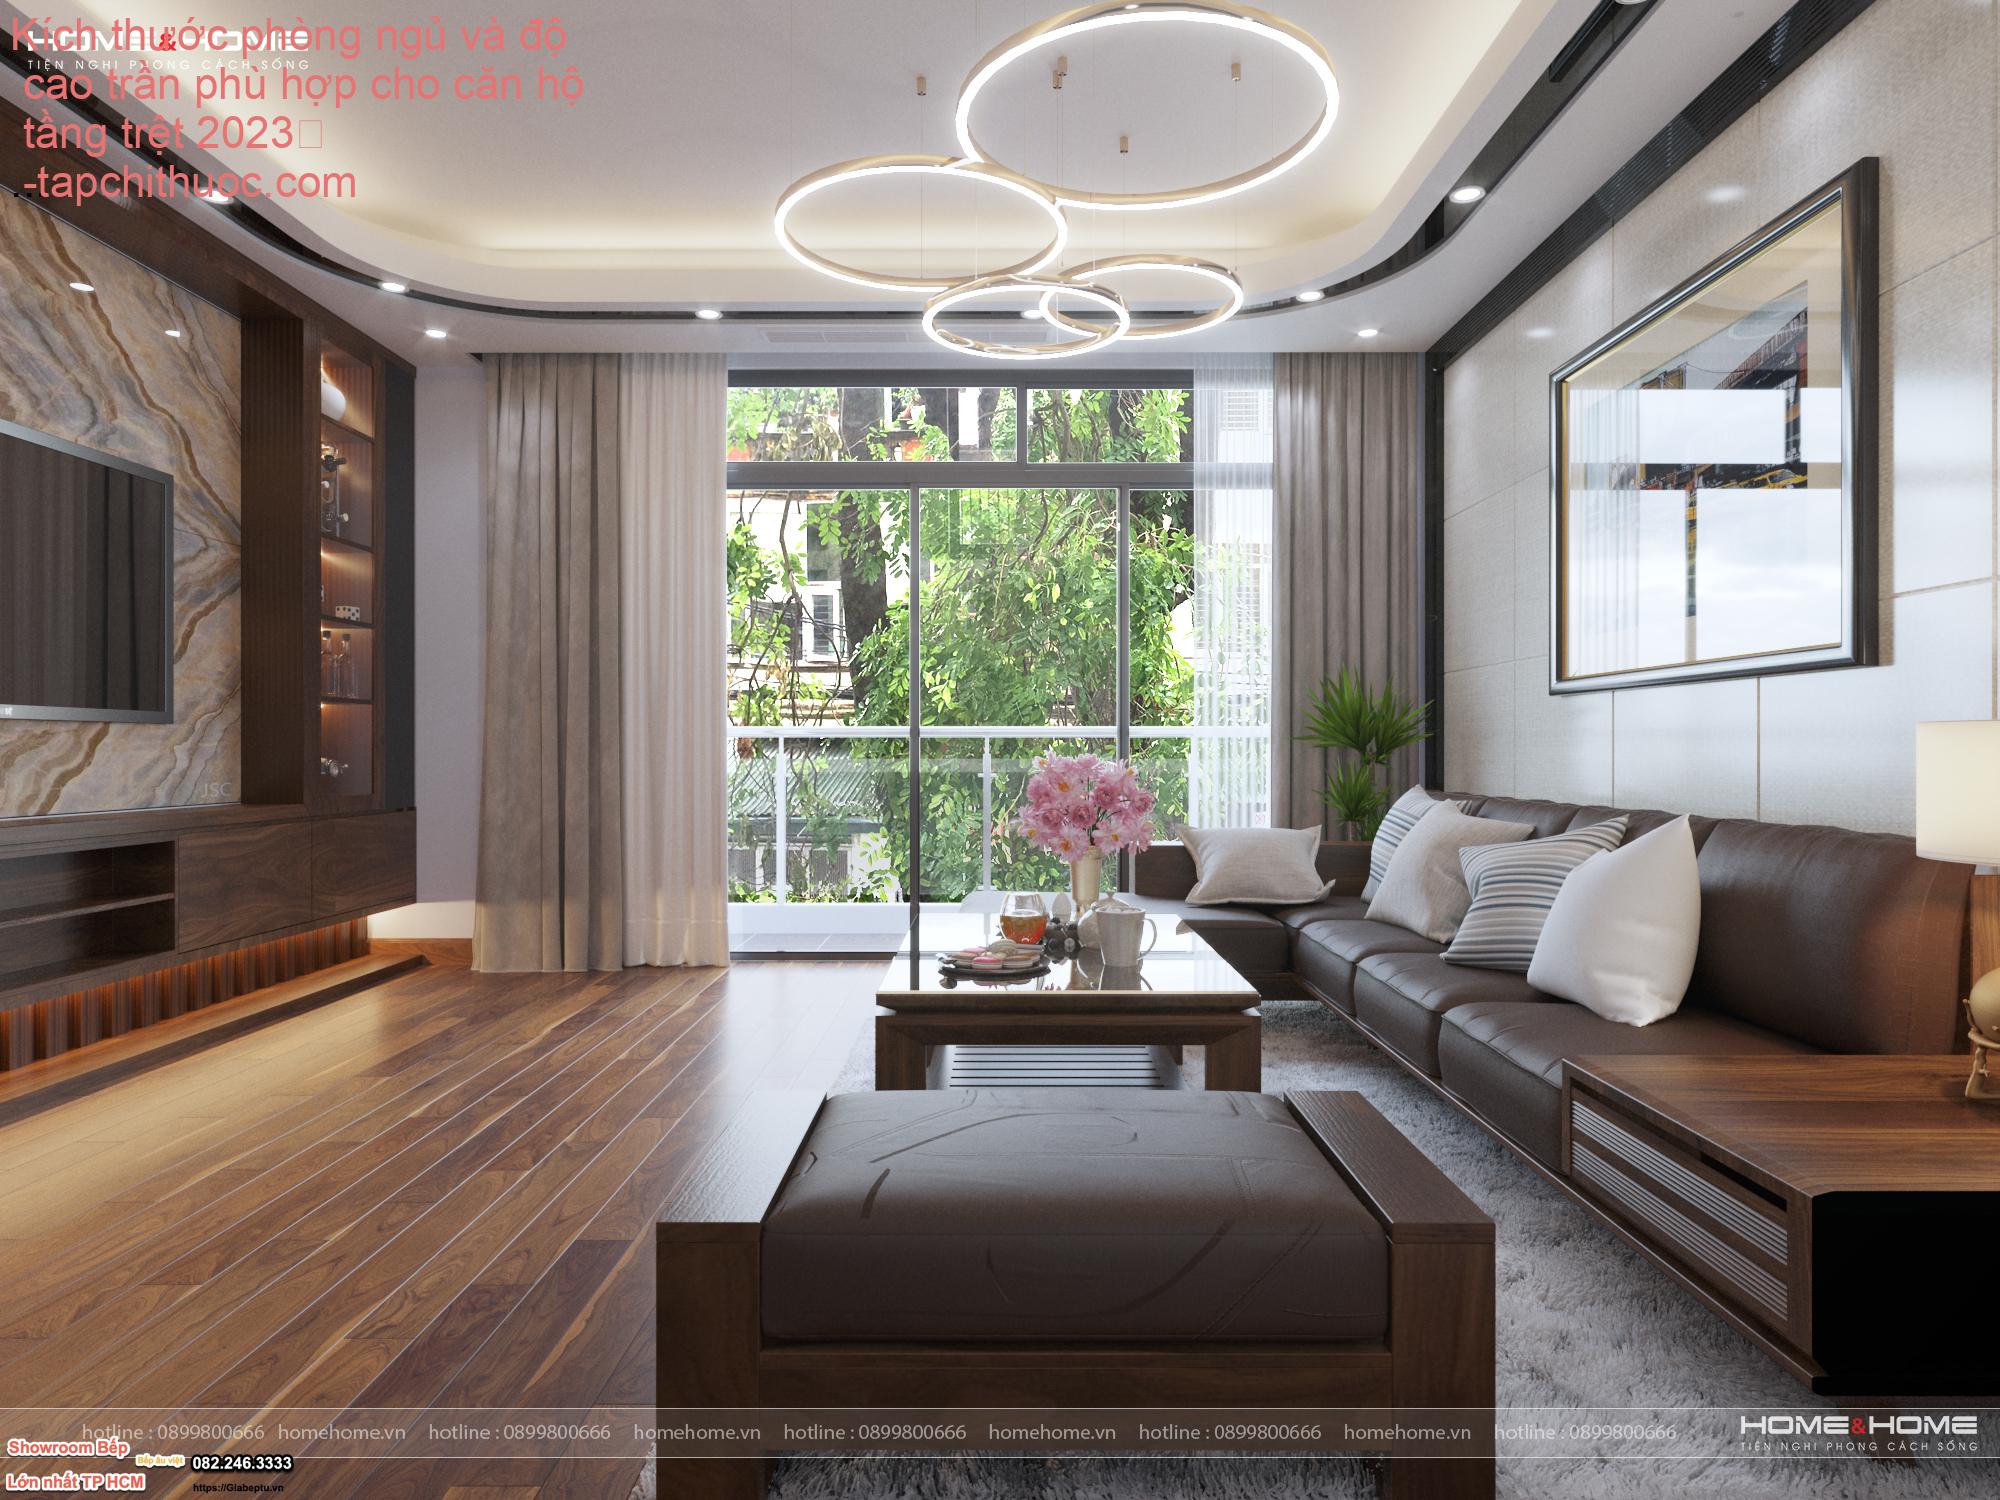 Kích thước phòng ngủ và độ cao trần phù hợp cho căn hộ tầng trệt 2023
